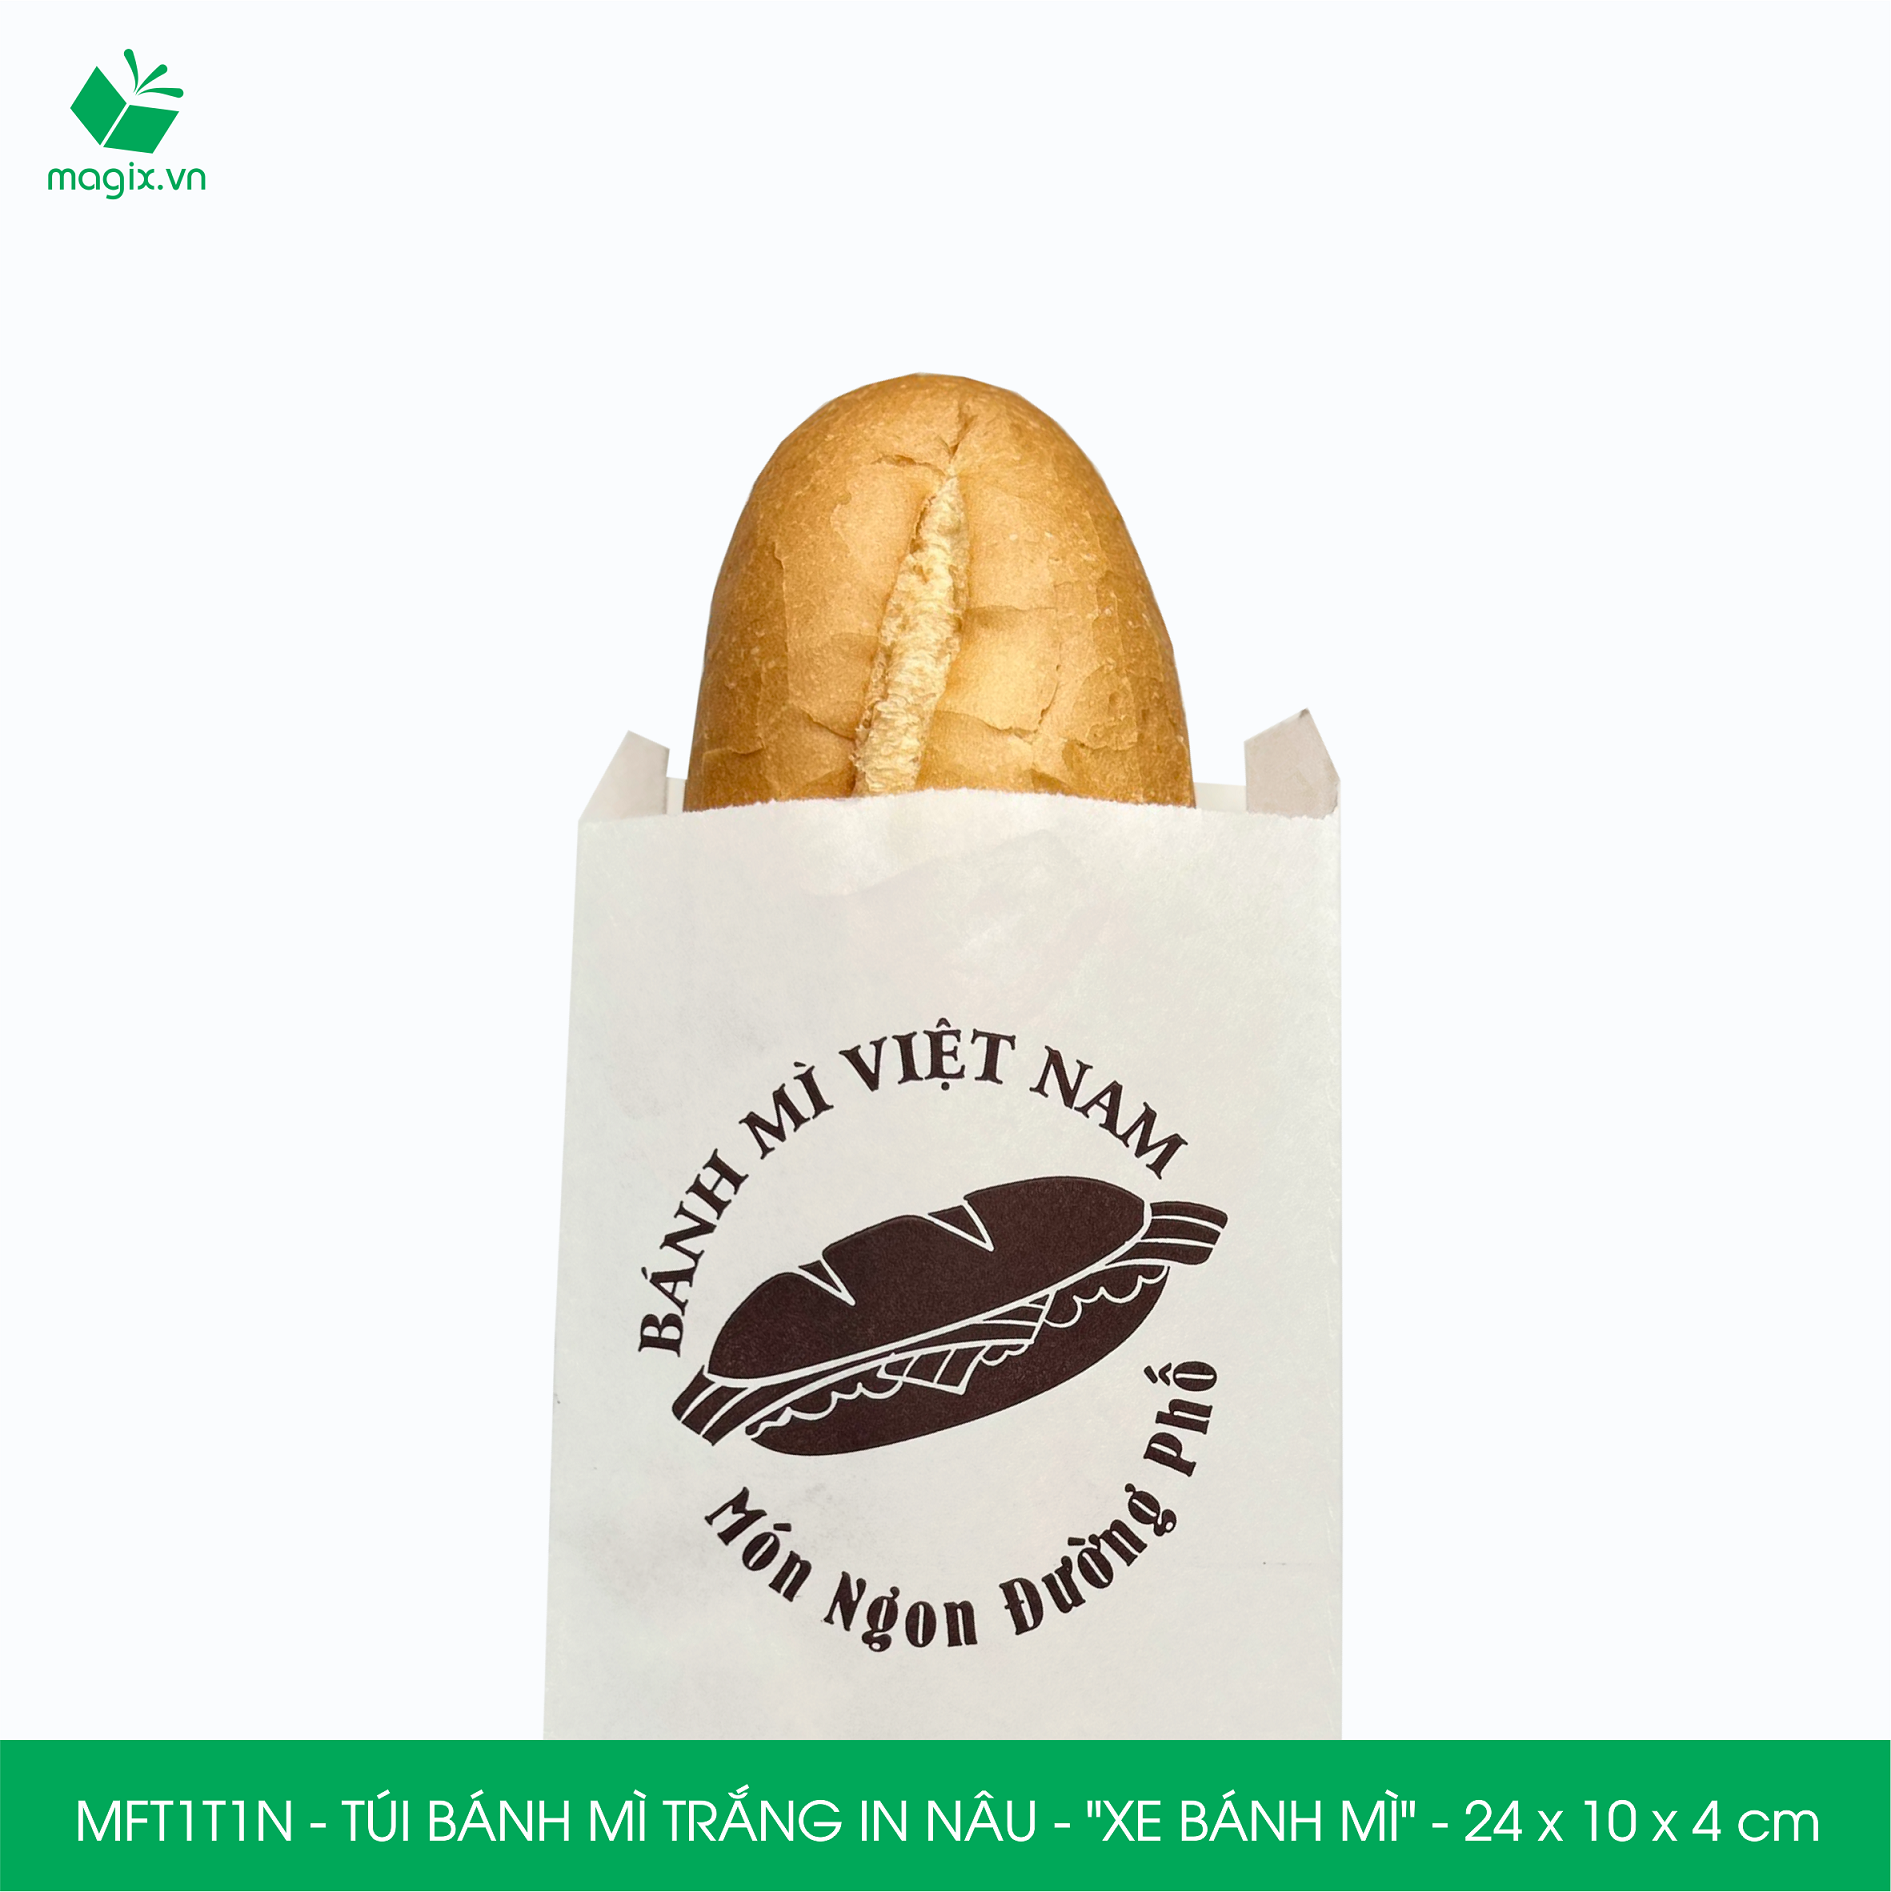 MFT1T1N - 24x10x4 cm - 1000Túi bánh mì Trắng, in sẵn họa tiết XE BÁNH MÌ - Bao bánh mì Túi giấy thực phẩm an toàn